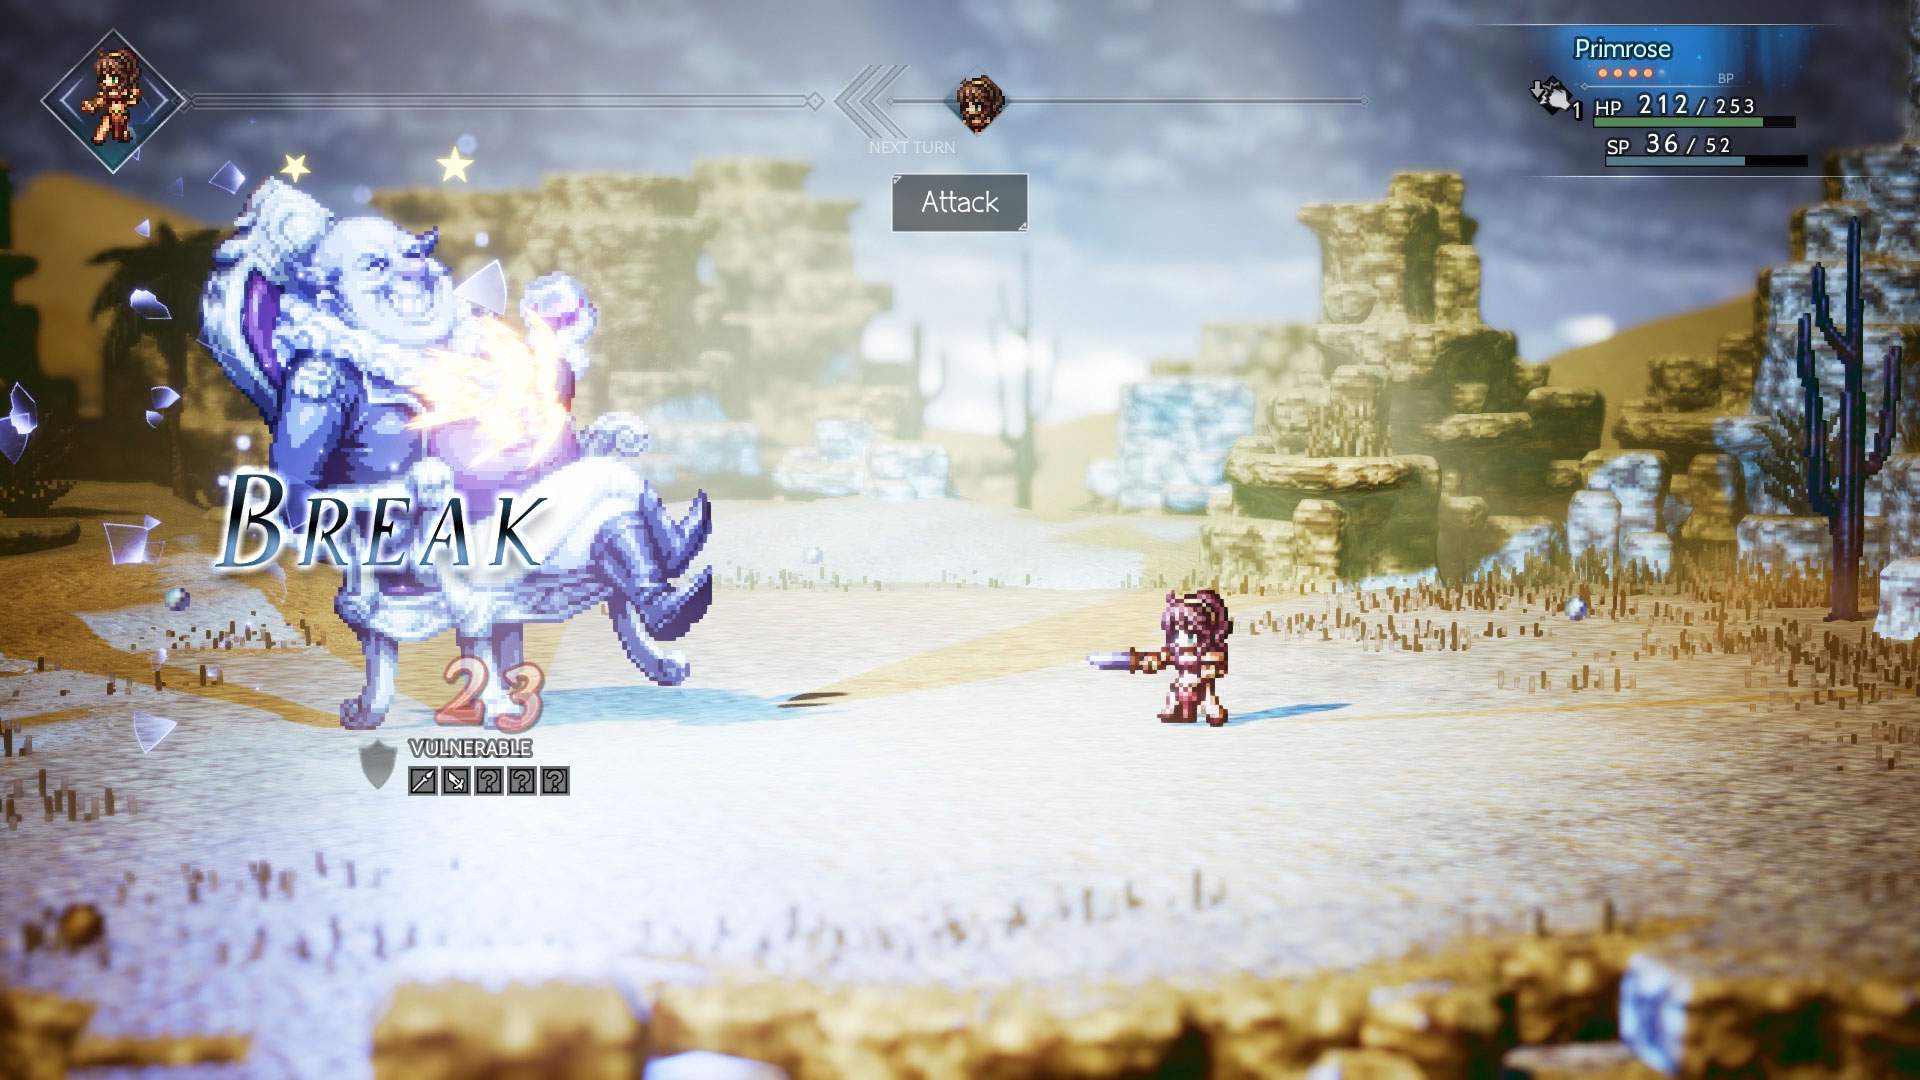 Der Screenshot zeigt Primrose, die in der Wüste einen Angriff gegen einen großen Gegner ausführt.